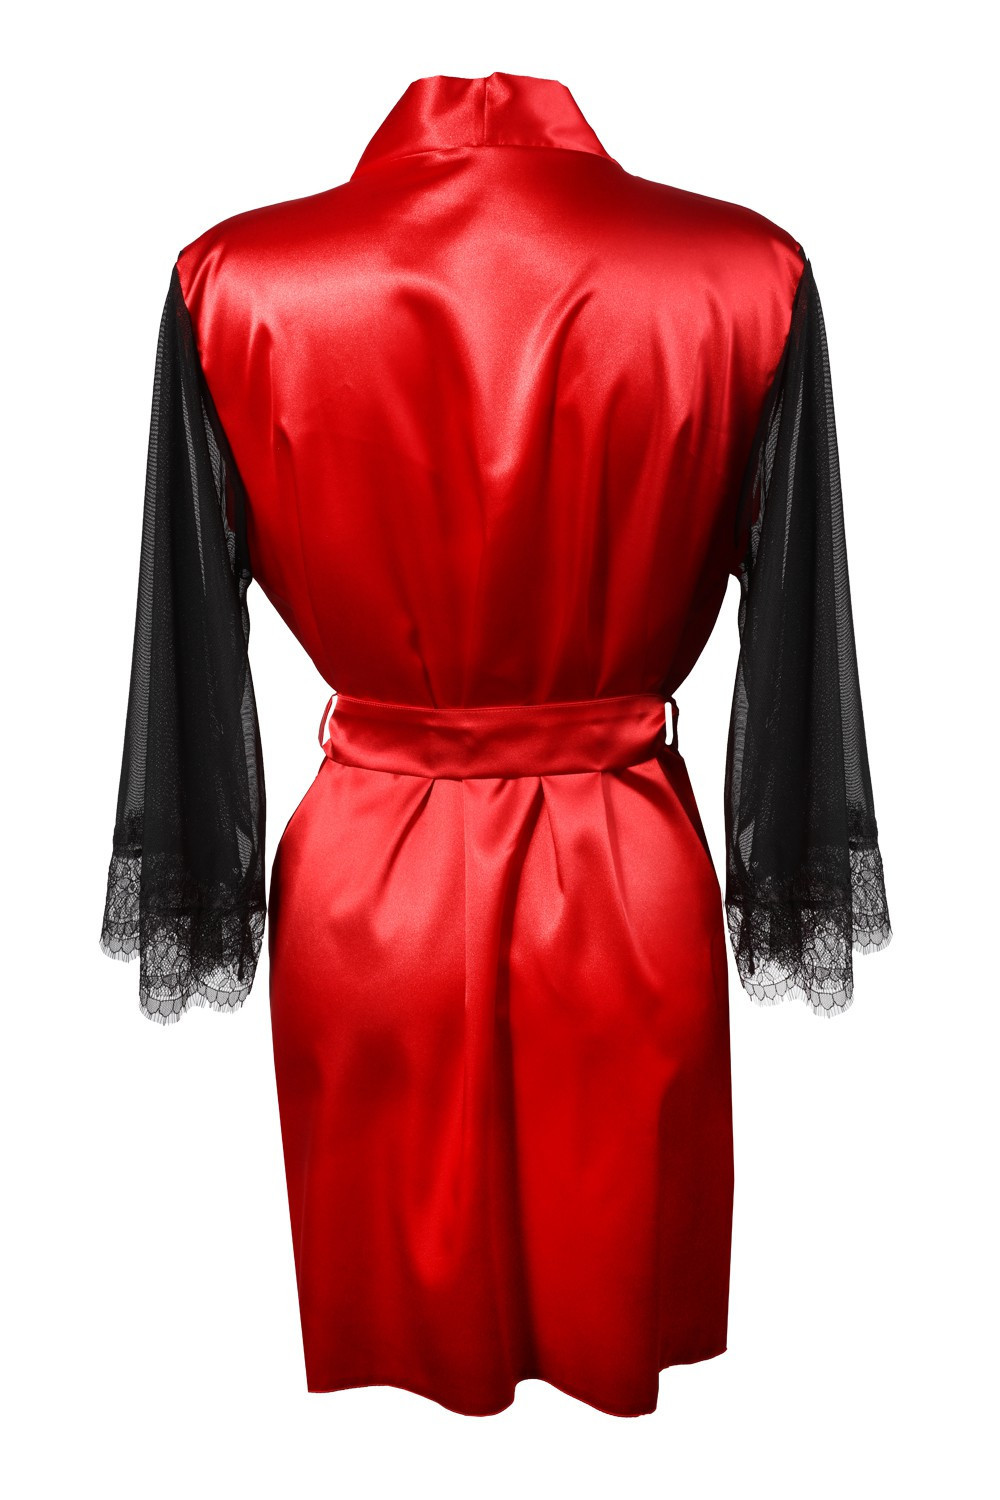 Housecoat model 18227296 Red M Red - DKaren